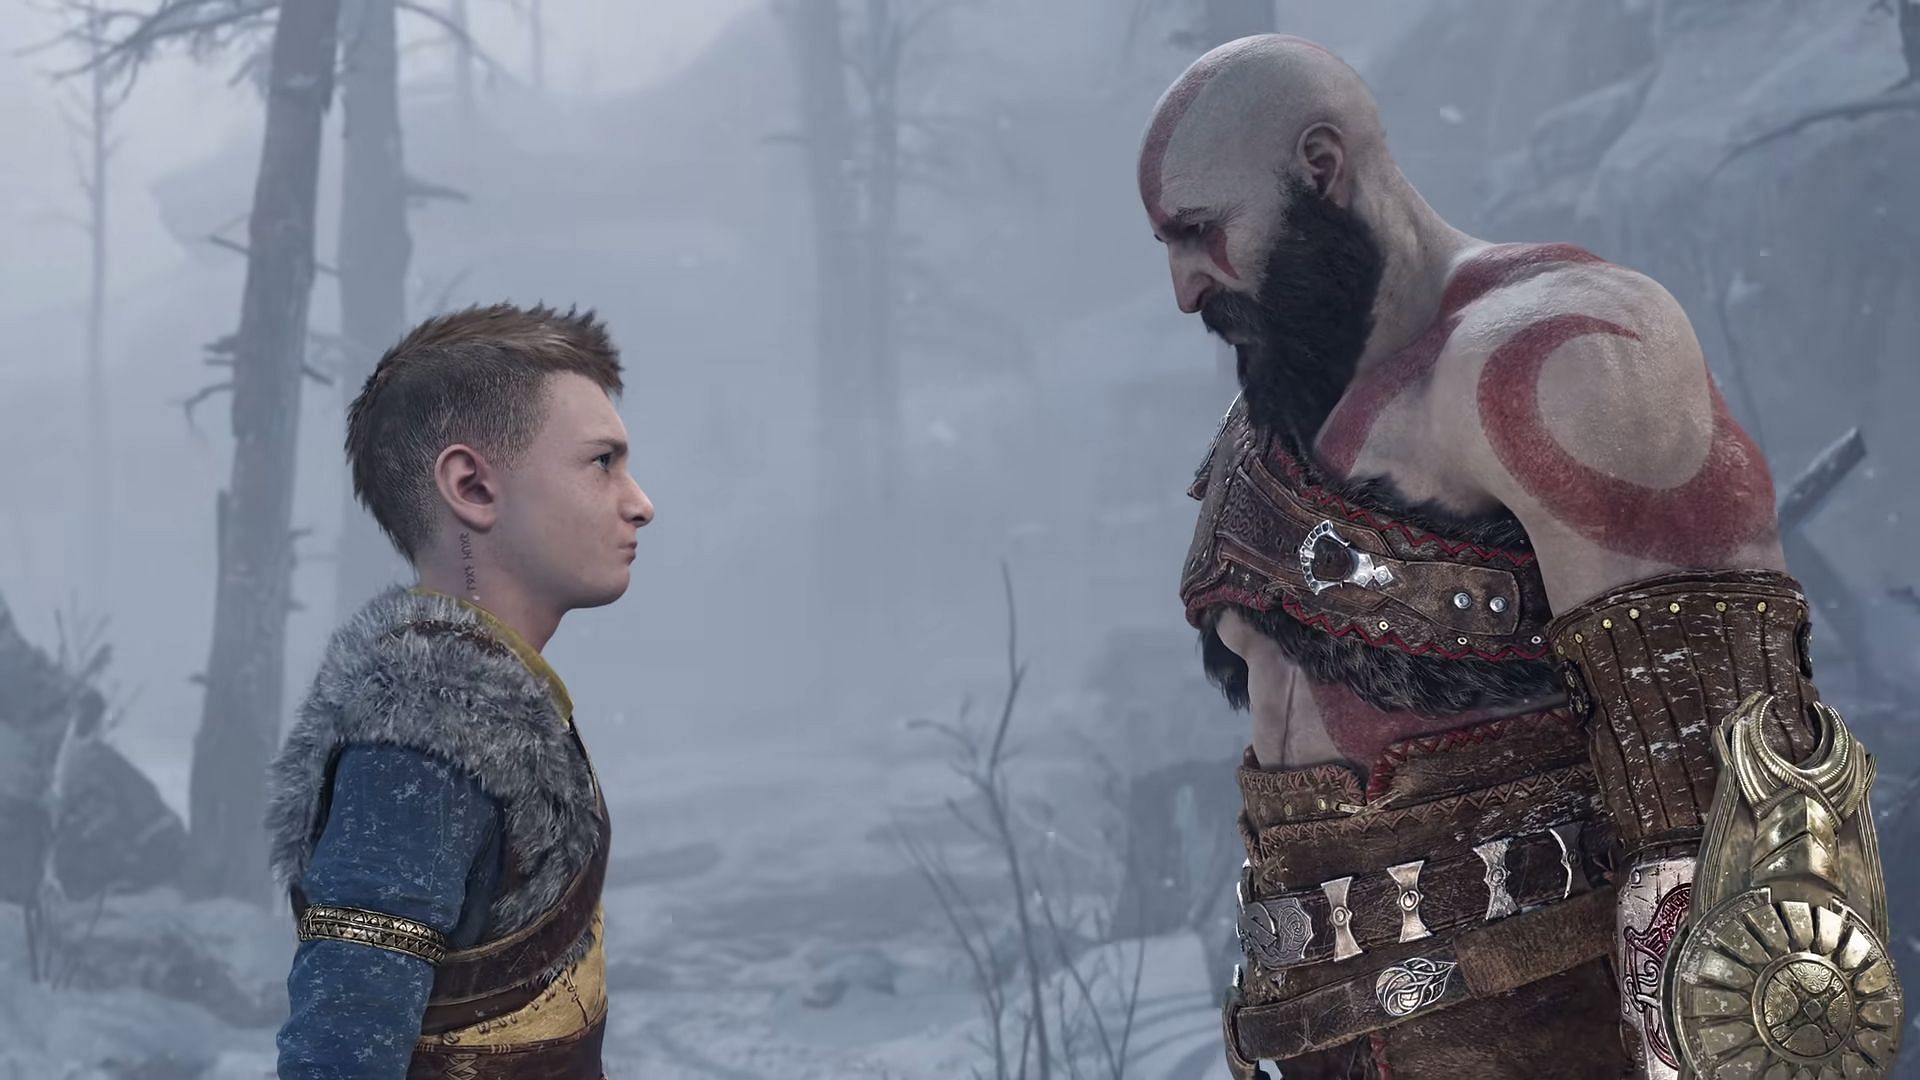 Kratos and Atreus on a journey through the Nine Realms, where the revelation of Atreus